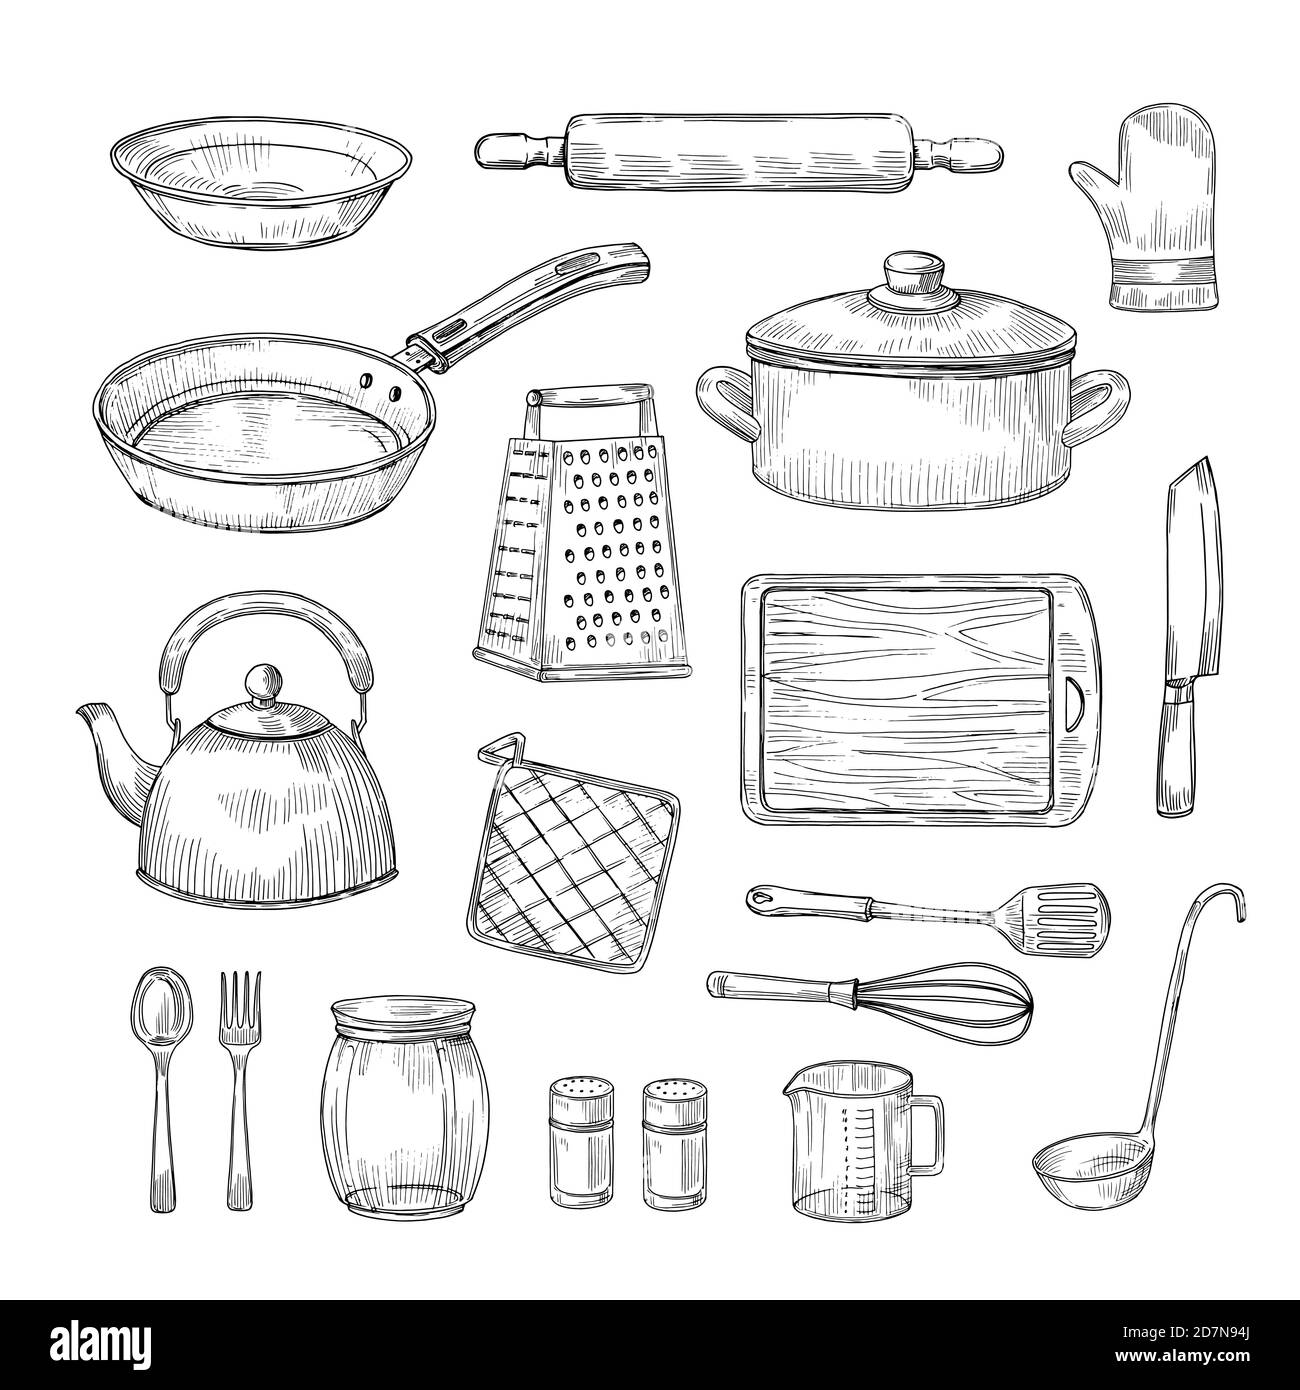 Outils De Cuisine Dessinés à La Main. Ustensiles De Cuisine Ustensiles De  Cuisine Collection De Vecteur De Croquis Vintage